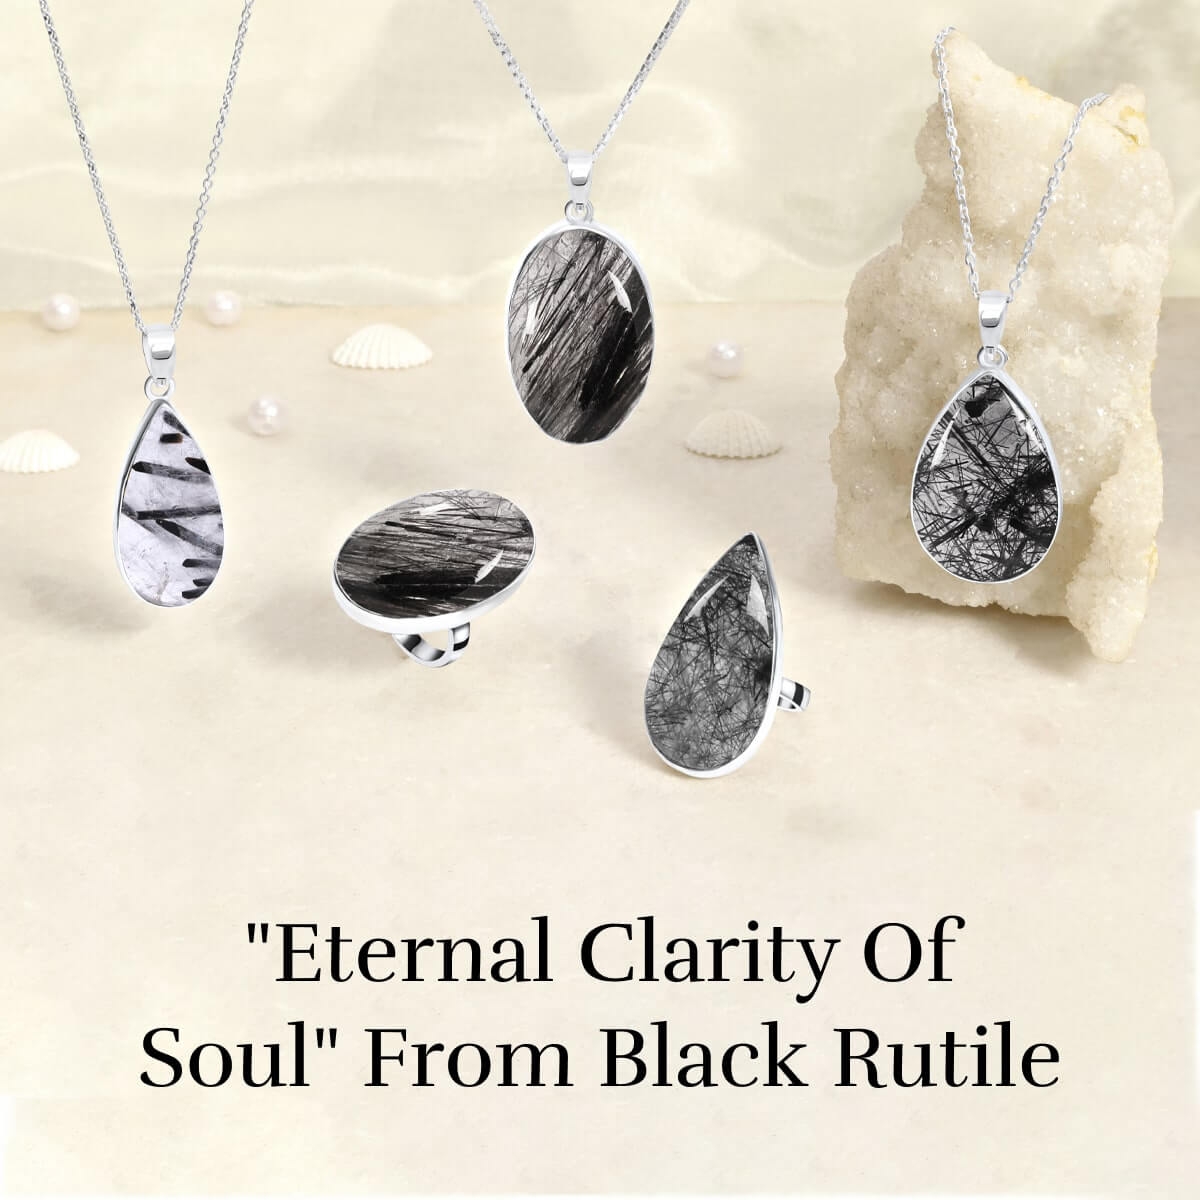 Spiritual healing benefits of black rutile